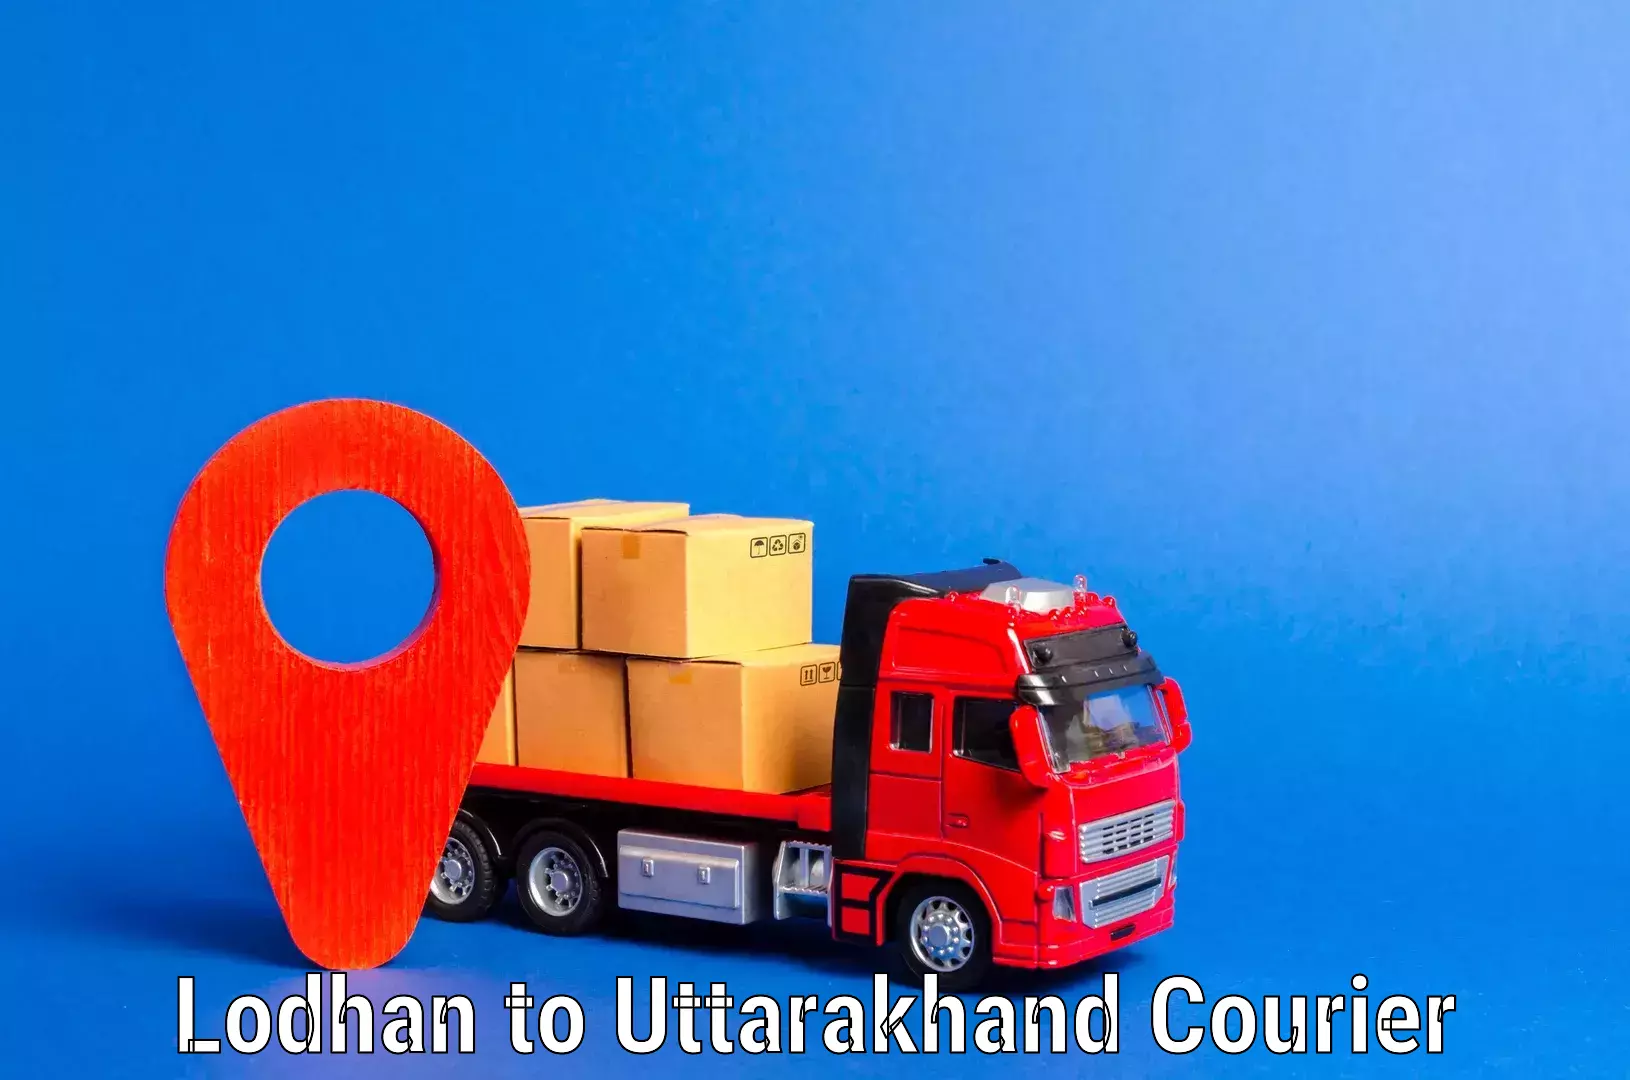 Household goods transporters Lodhan to Uttarakhand